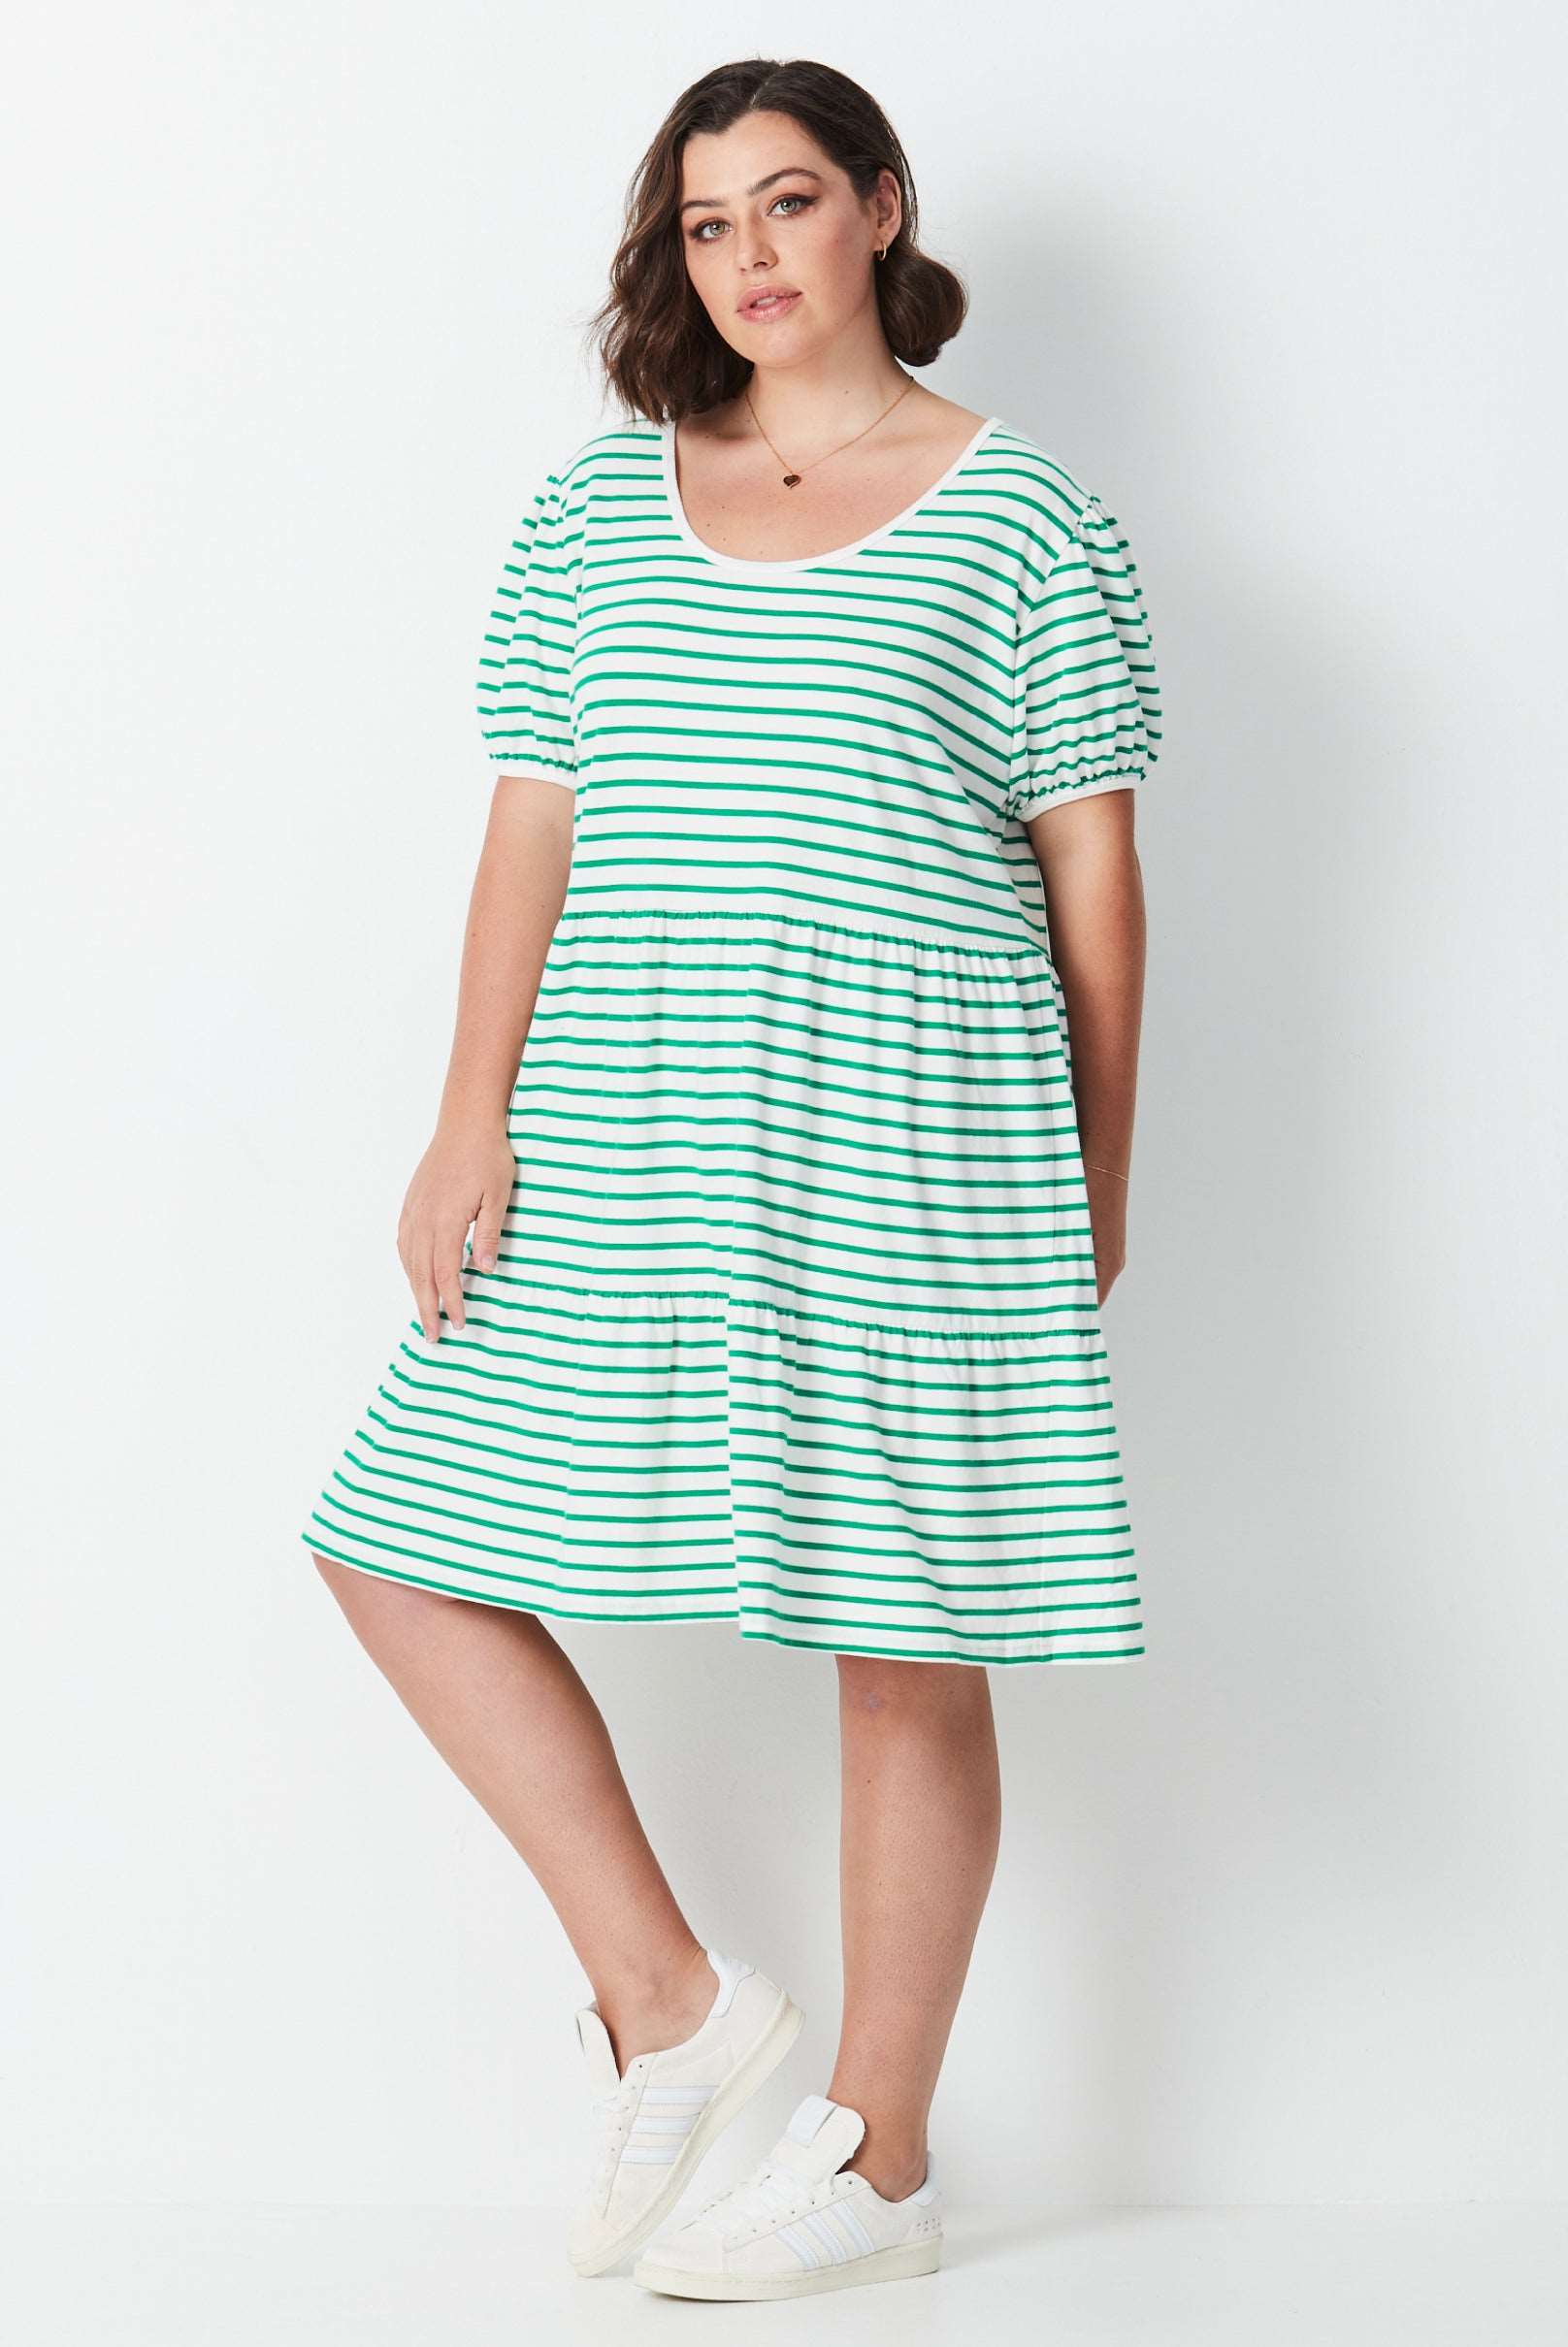 Striped Summer Jersey Dress